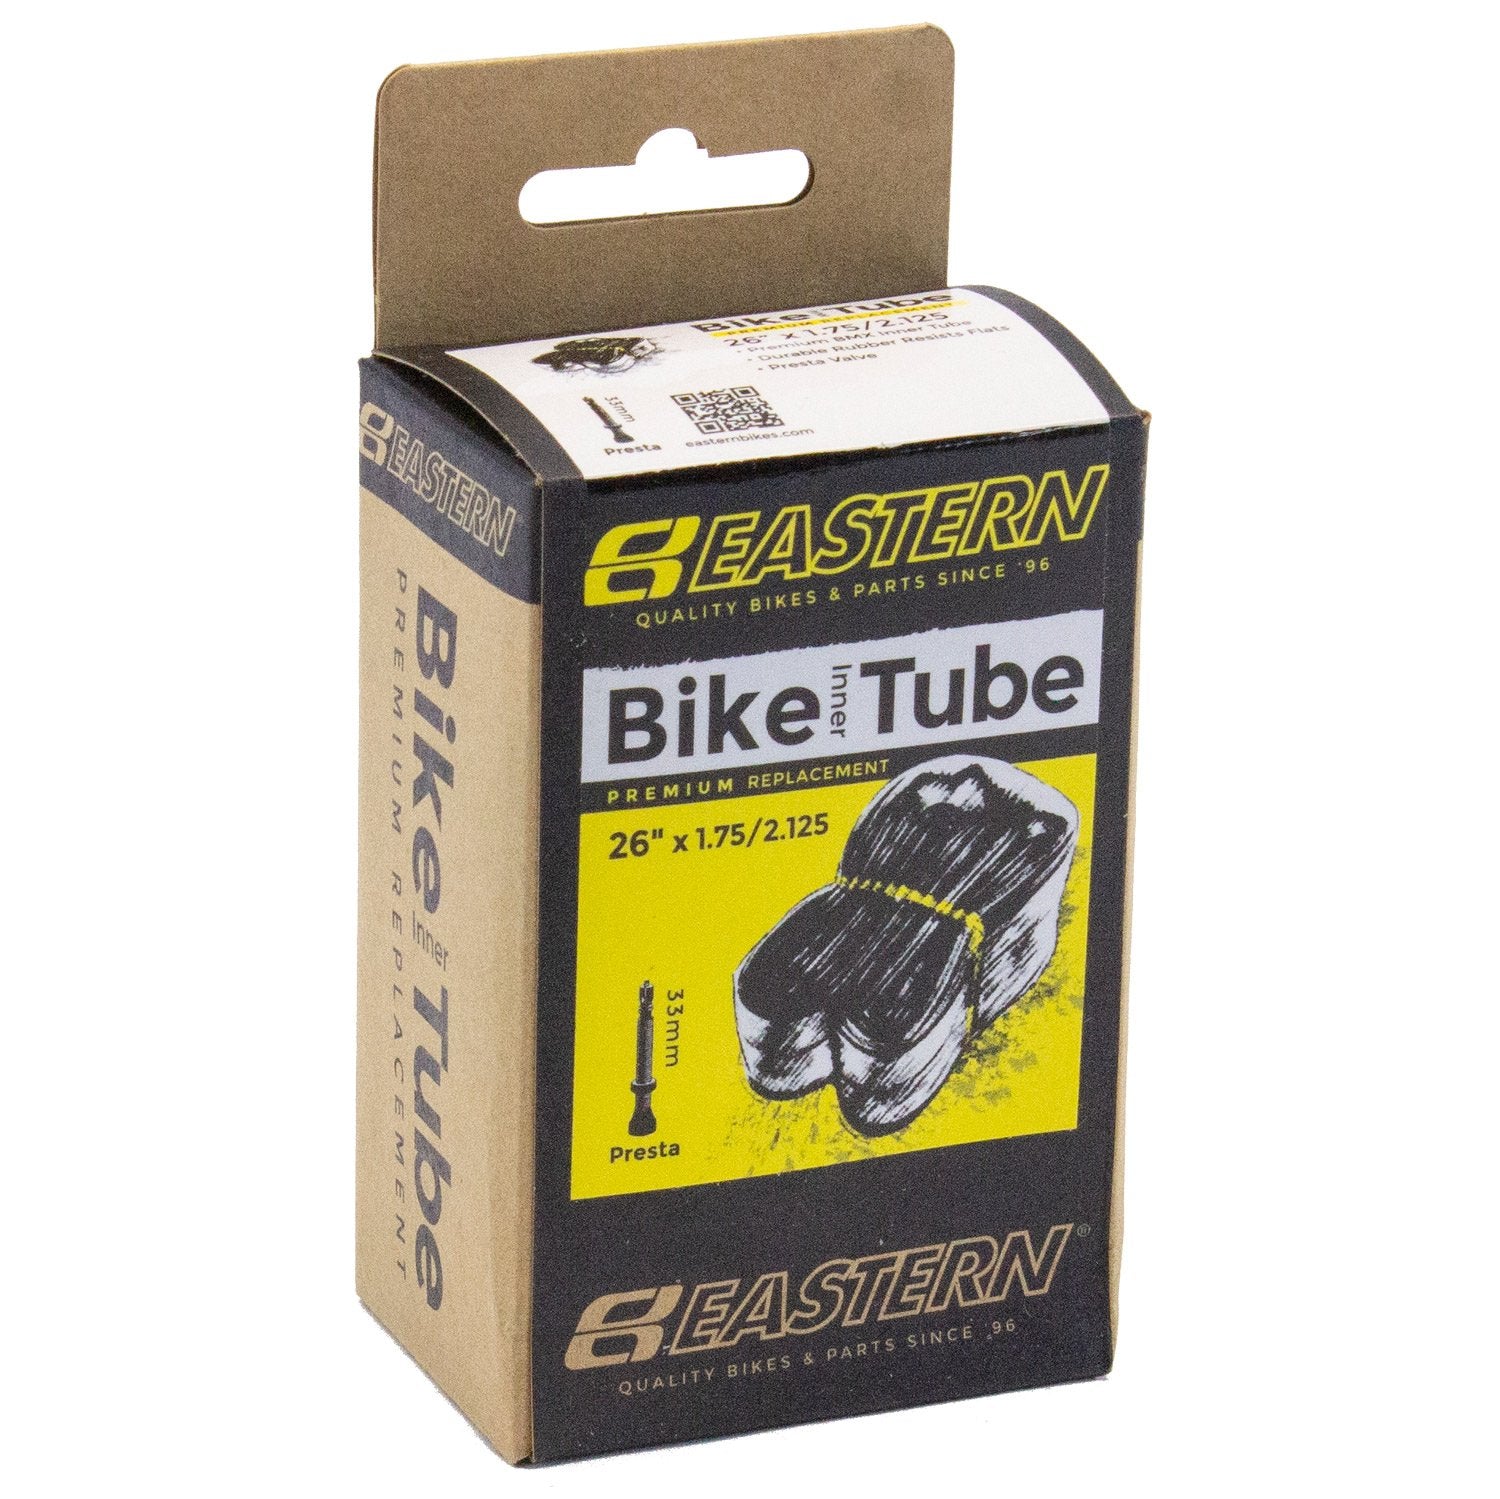 eastern bikes 26 inch presta 33mm bike tube